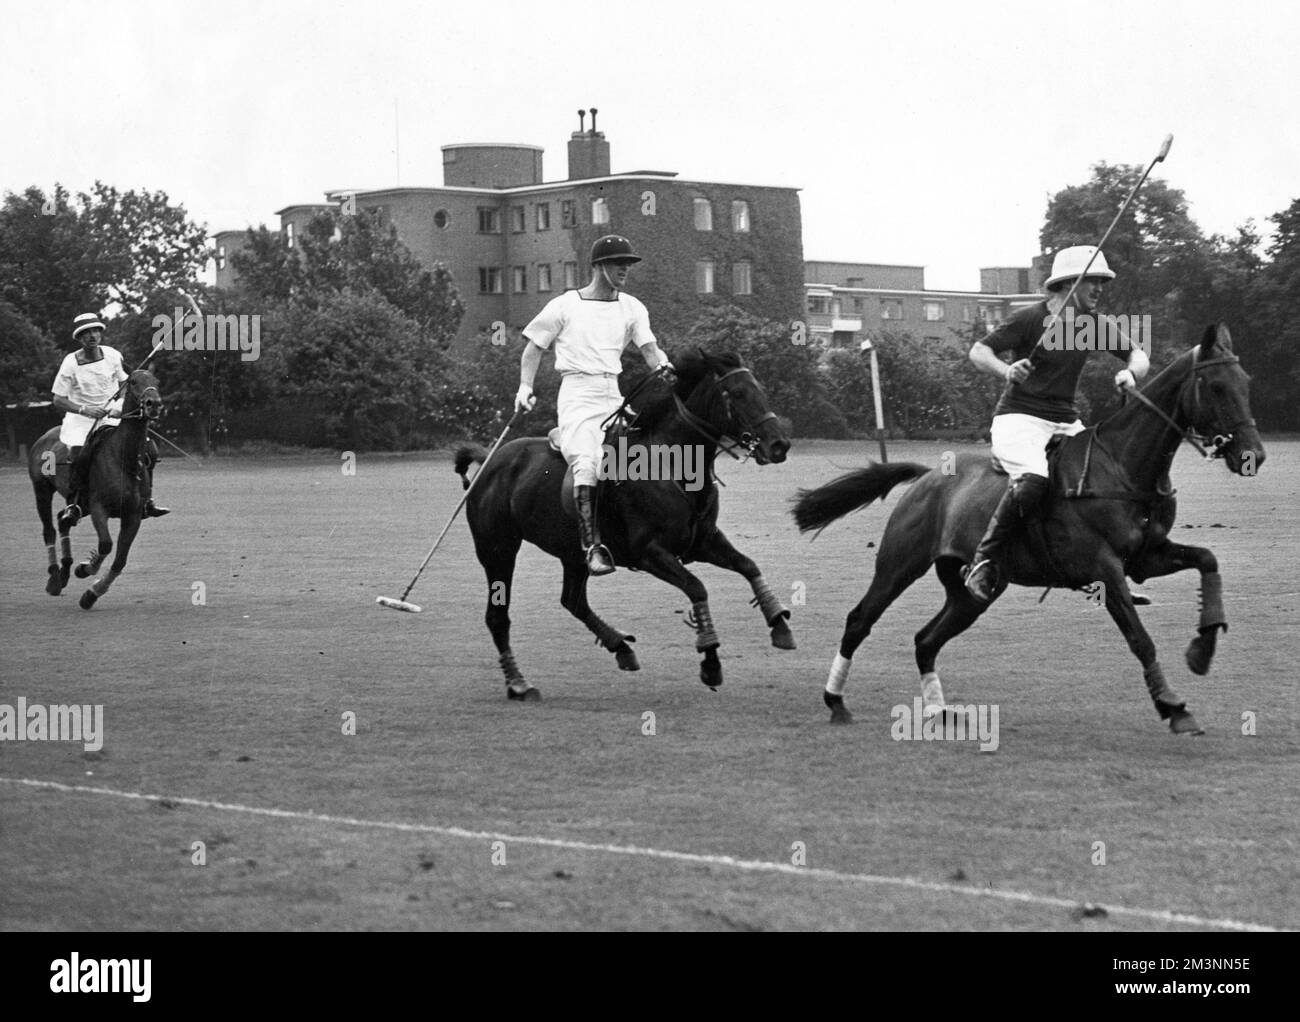 Les quarts de finale de la coupe du comté de Polo à Roehampton en juillet 1954 avec le prince Philip, duc d'Édimbourg à gauche, jouant pour les Mariners, suivant E. Lalor de l'équipe de Henley. Date: 1954 Banque D'Images